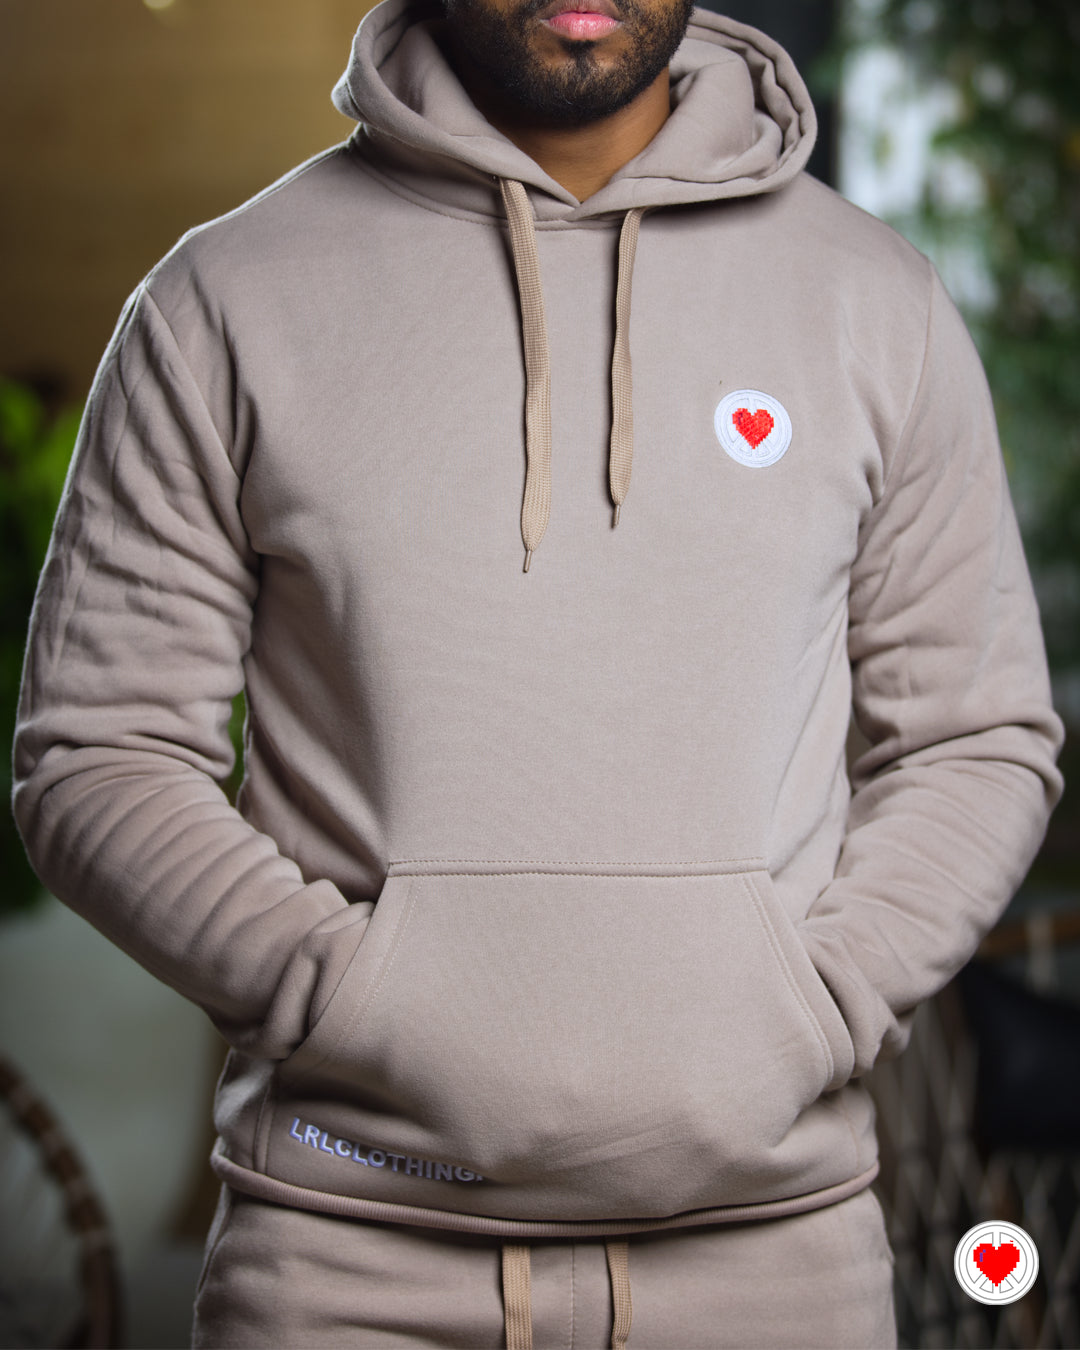 “Men’s Khaki Heart Logo Sweatsuit”